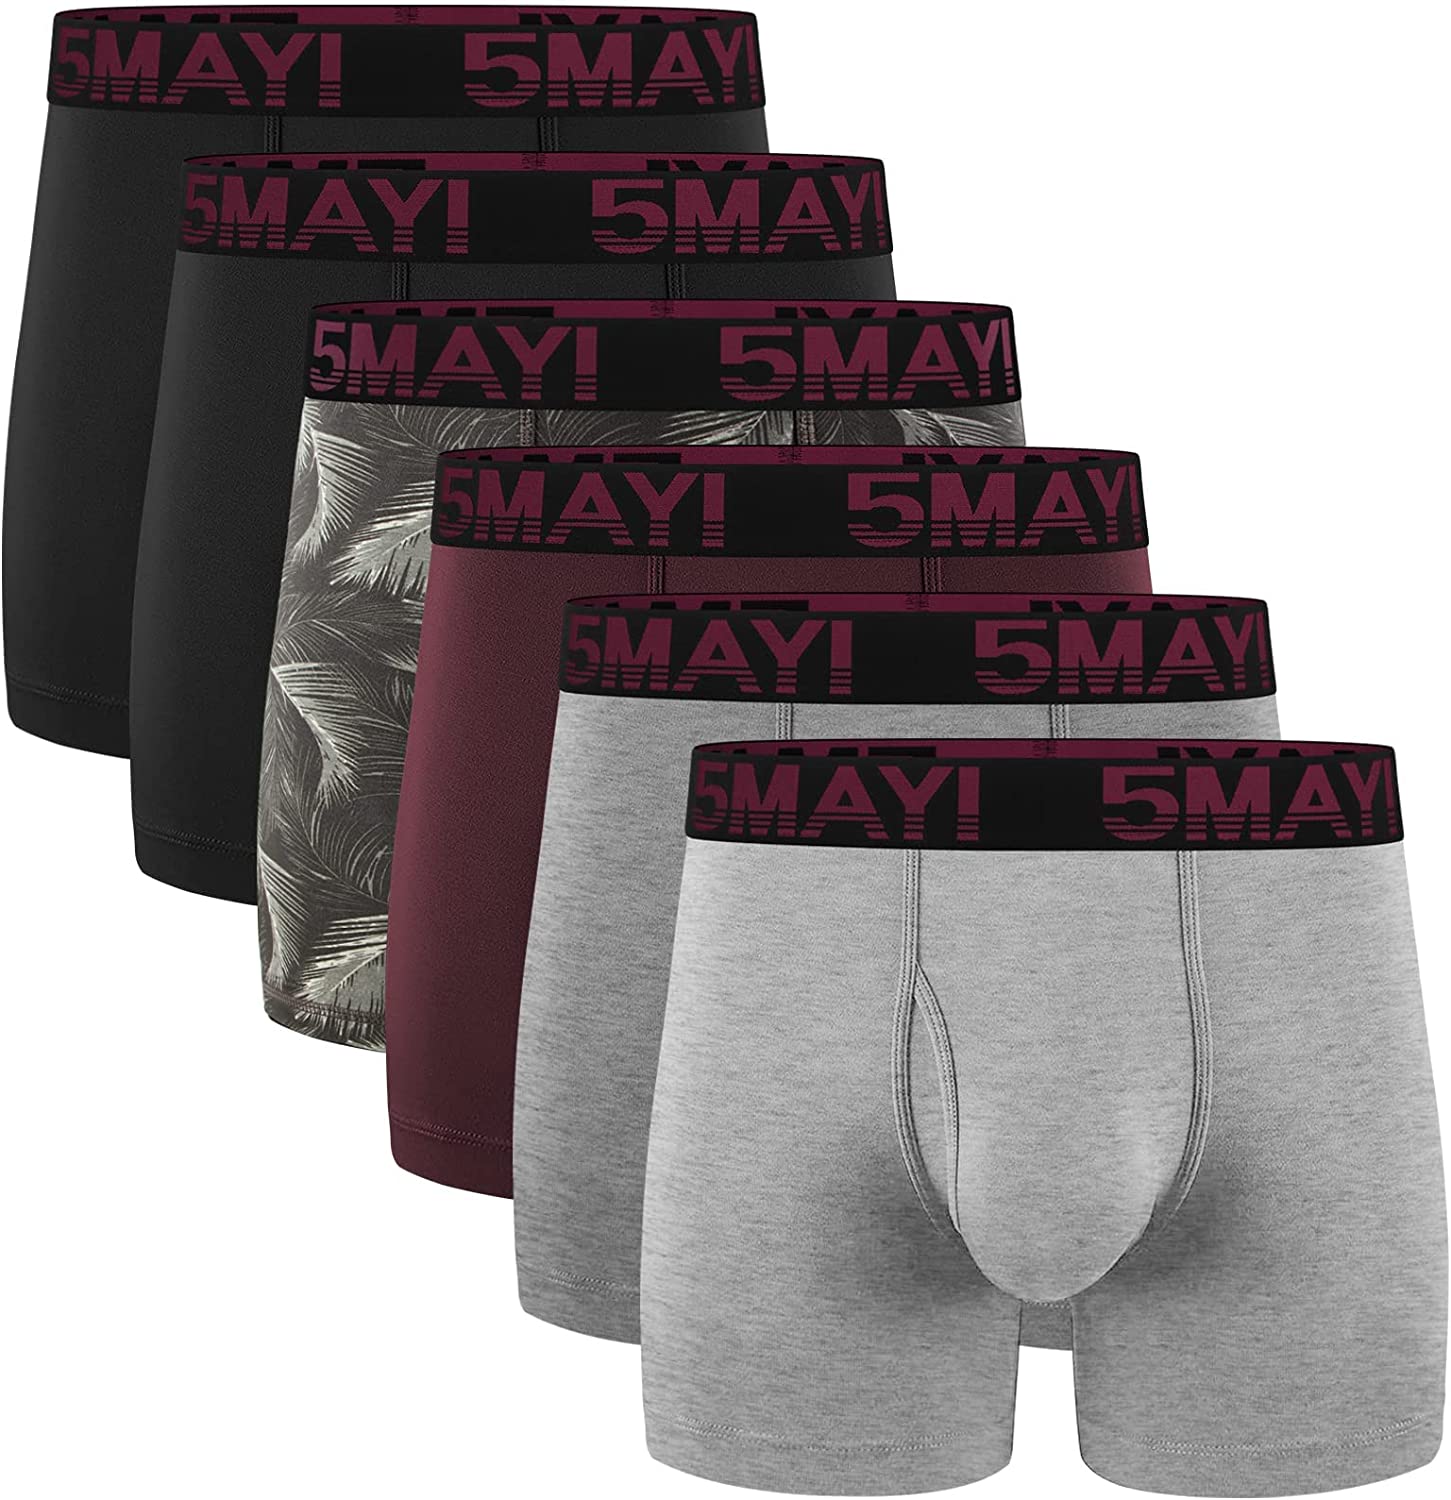 5Mayi Men's Underwear Boxer Briefs Cotton Jordan